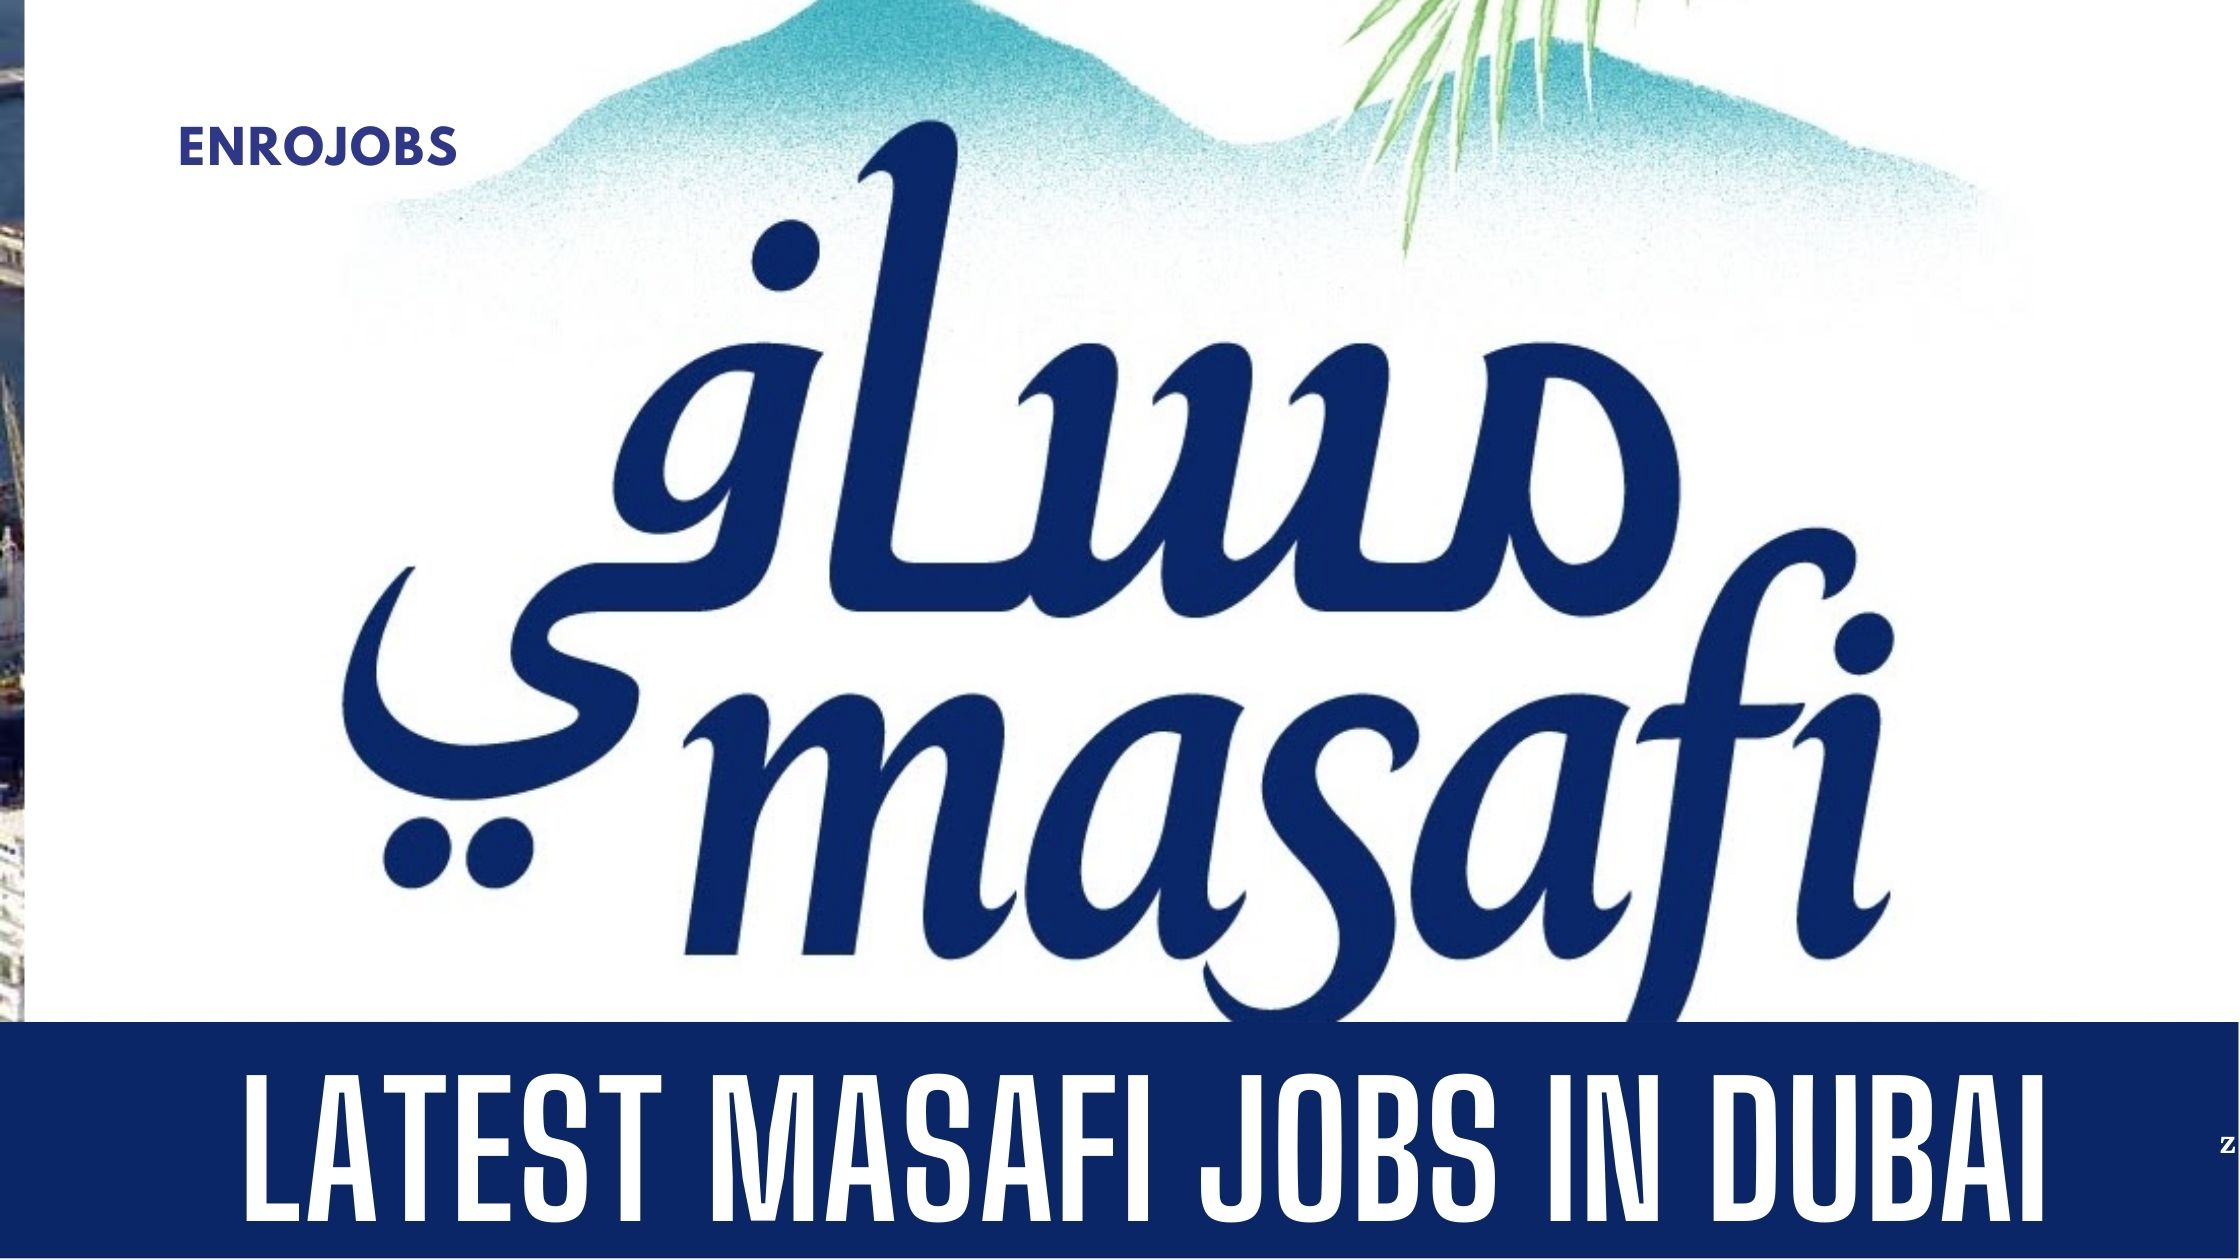 masafi job